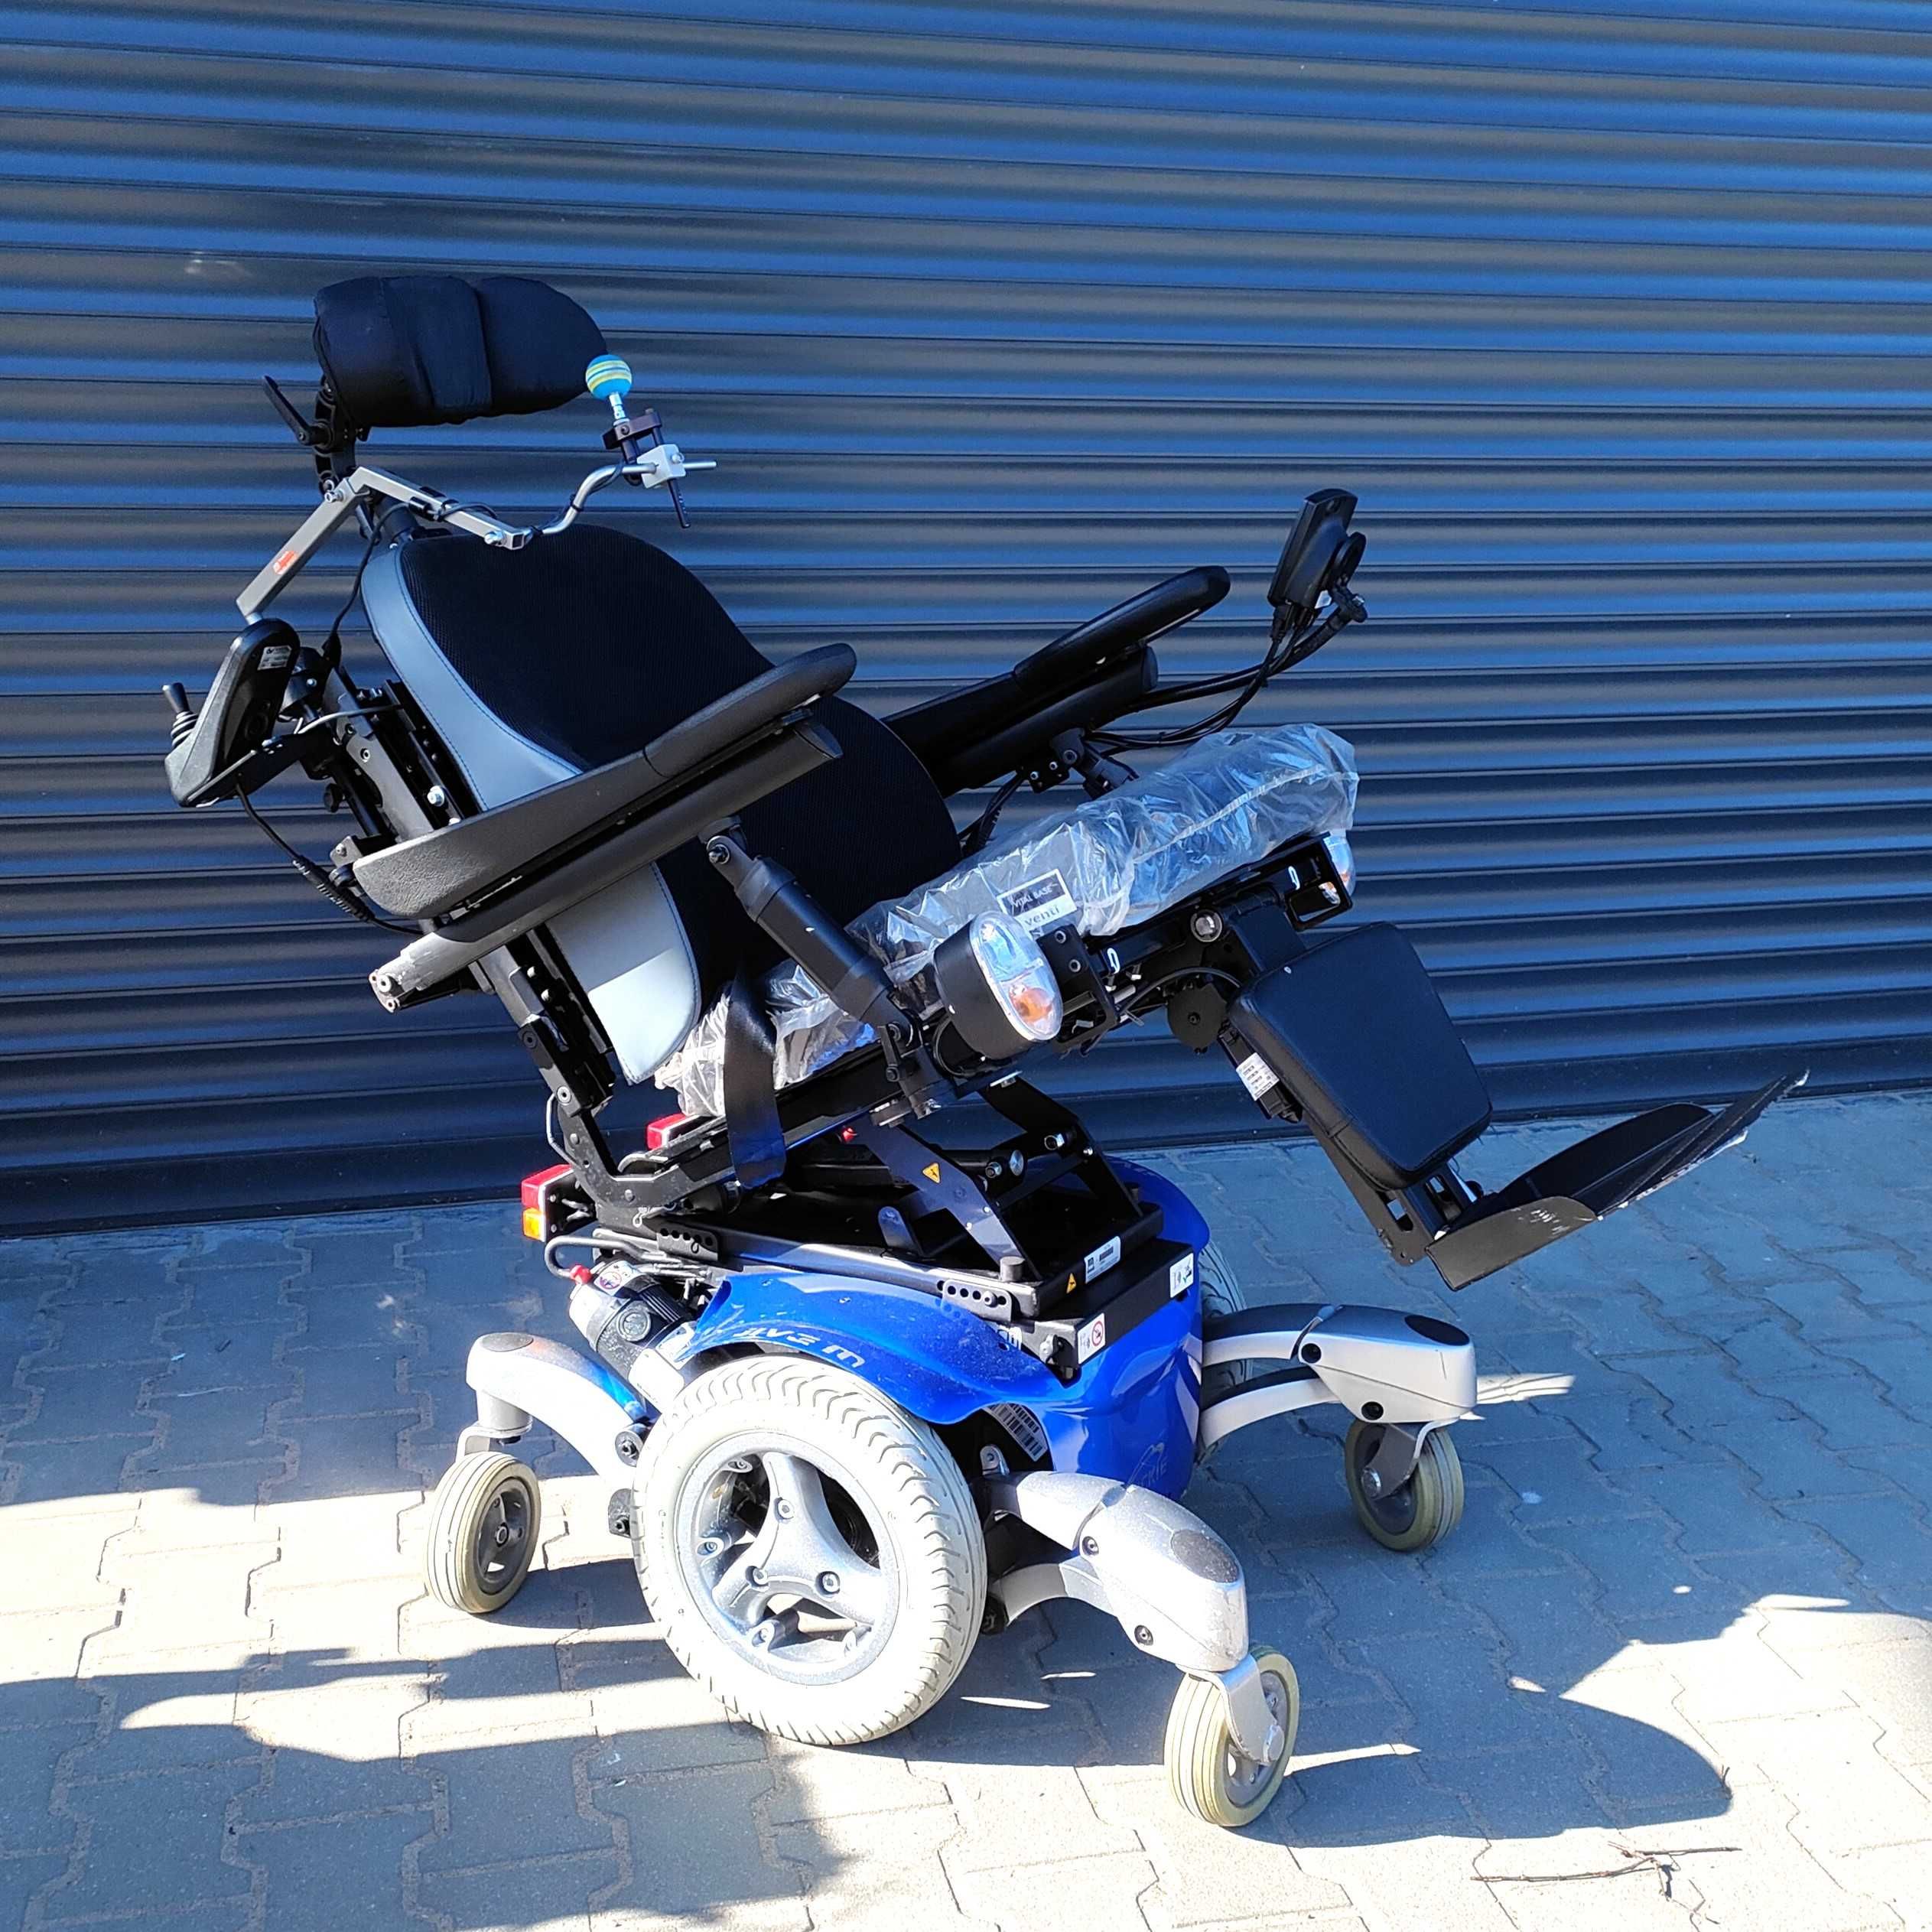 Wózek inwalidzki Quickie Jive M sterowany brodą i joystick opiekuna